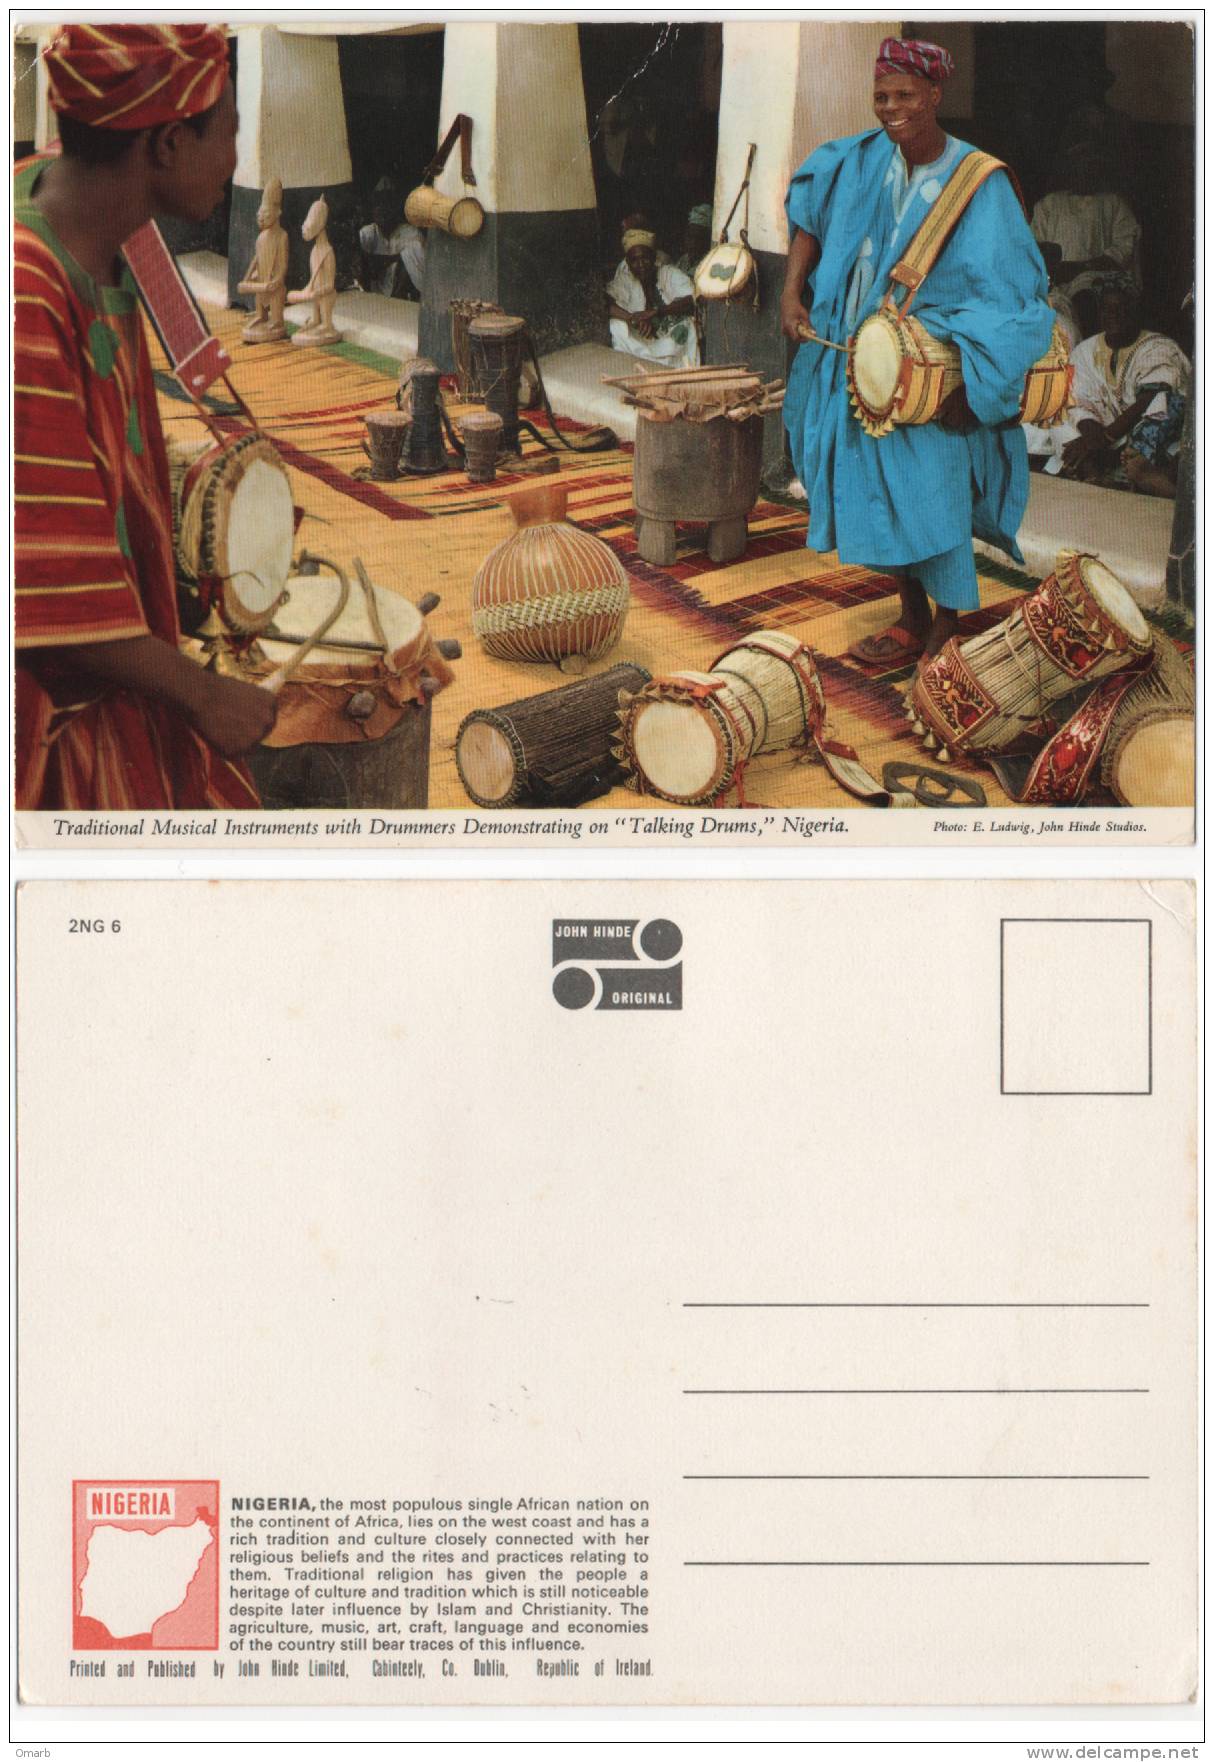 Car002 Cartolina | Postcard | Carte Postale, Nigeria - Traditional Musical Instruments - Nigeria